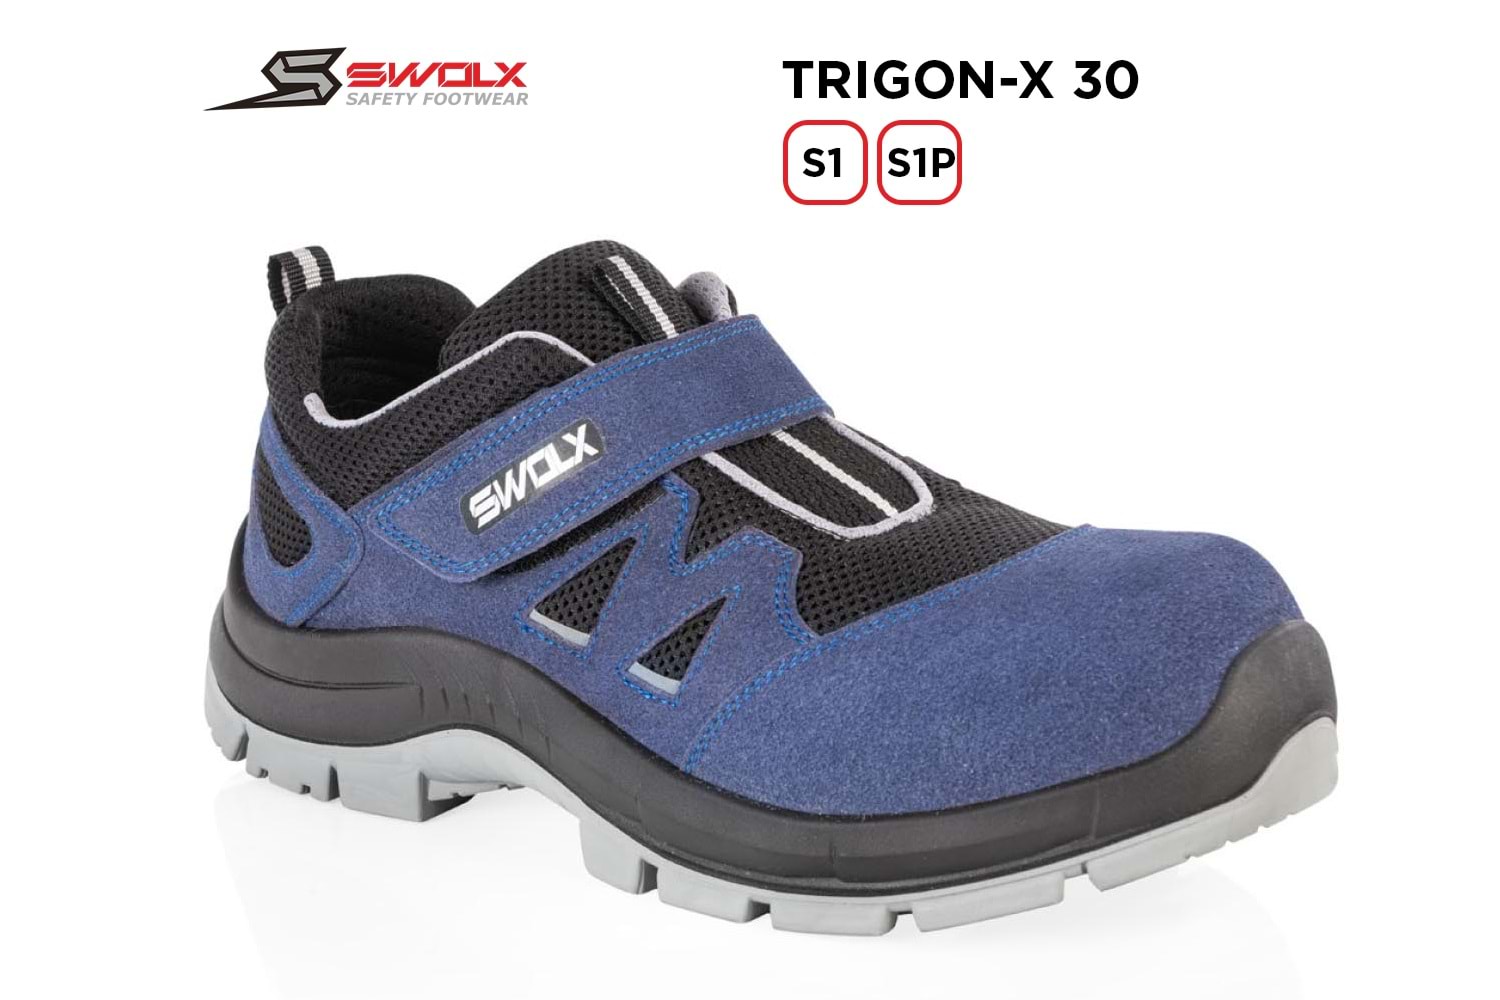 Swolx İş Ayakkabısı - Trigon-X 30 S1 - 43